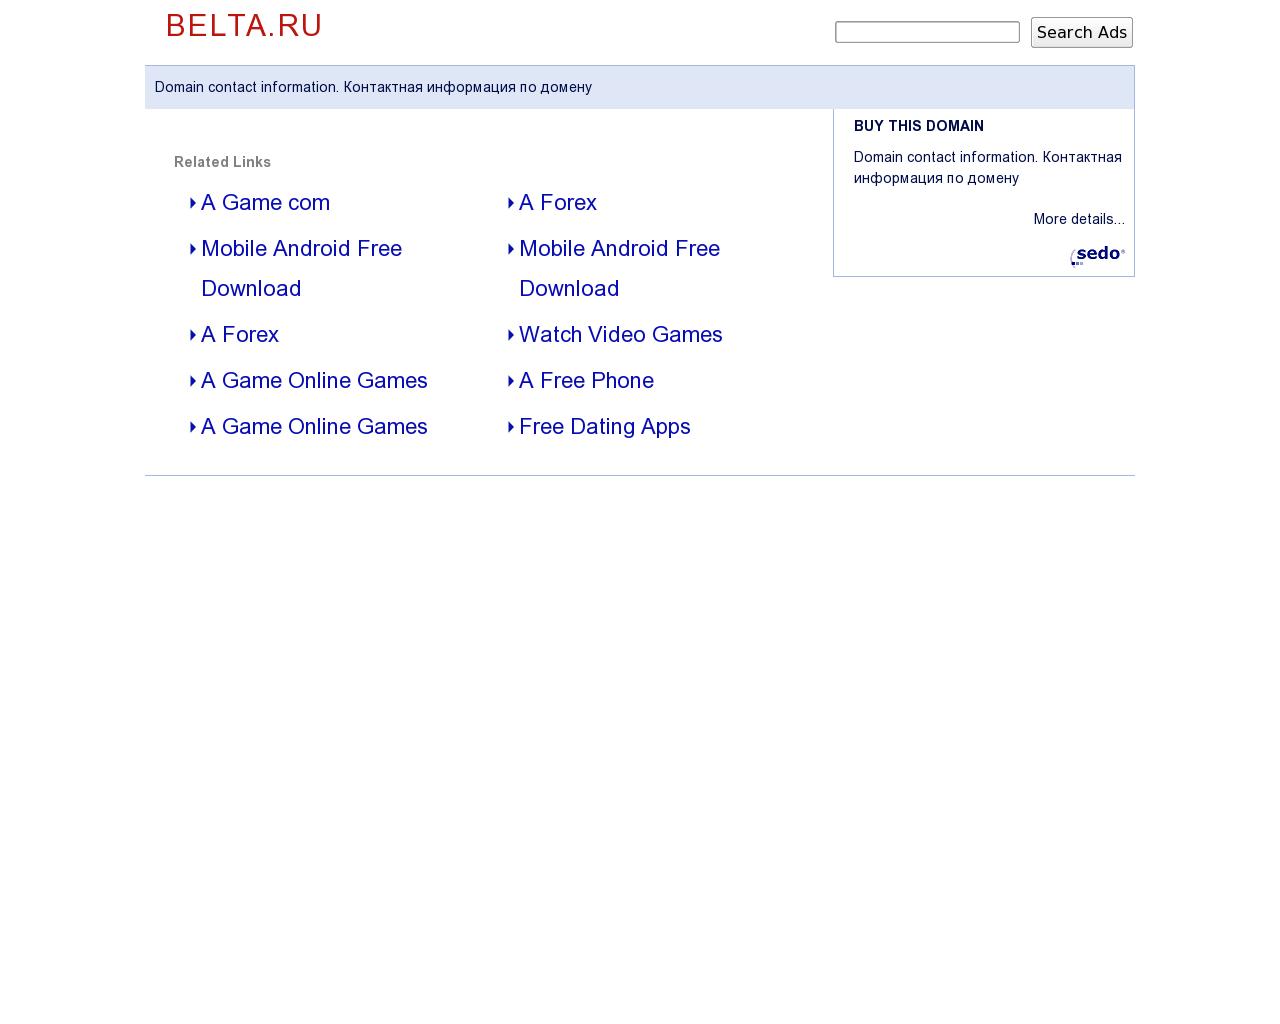 Изображение сайта belta.ru в разрешении 1280x1024